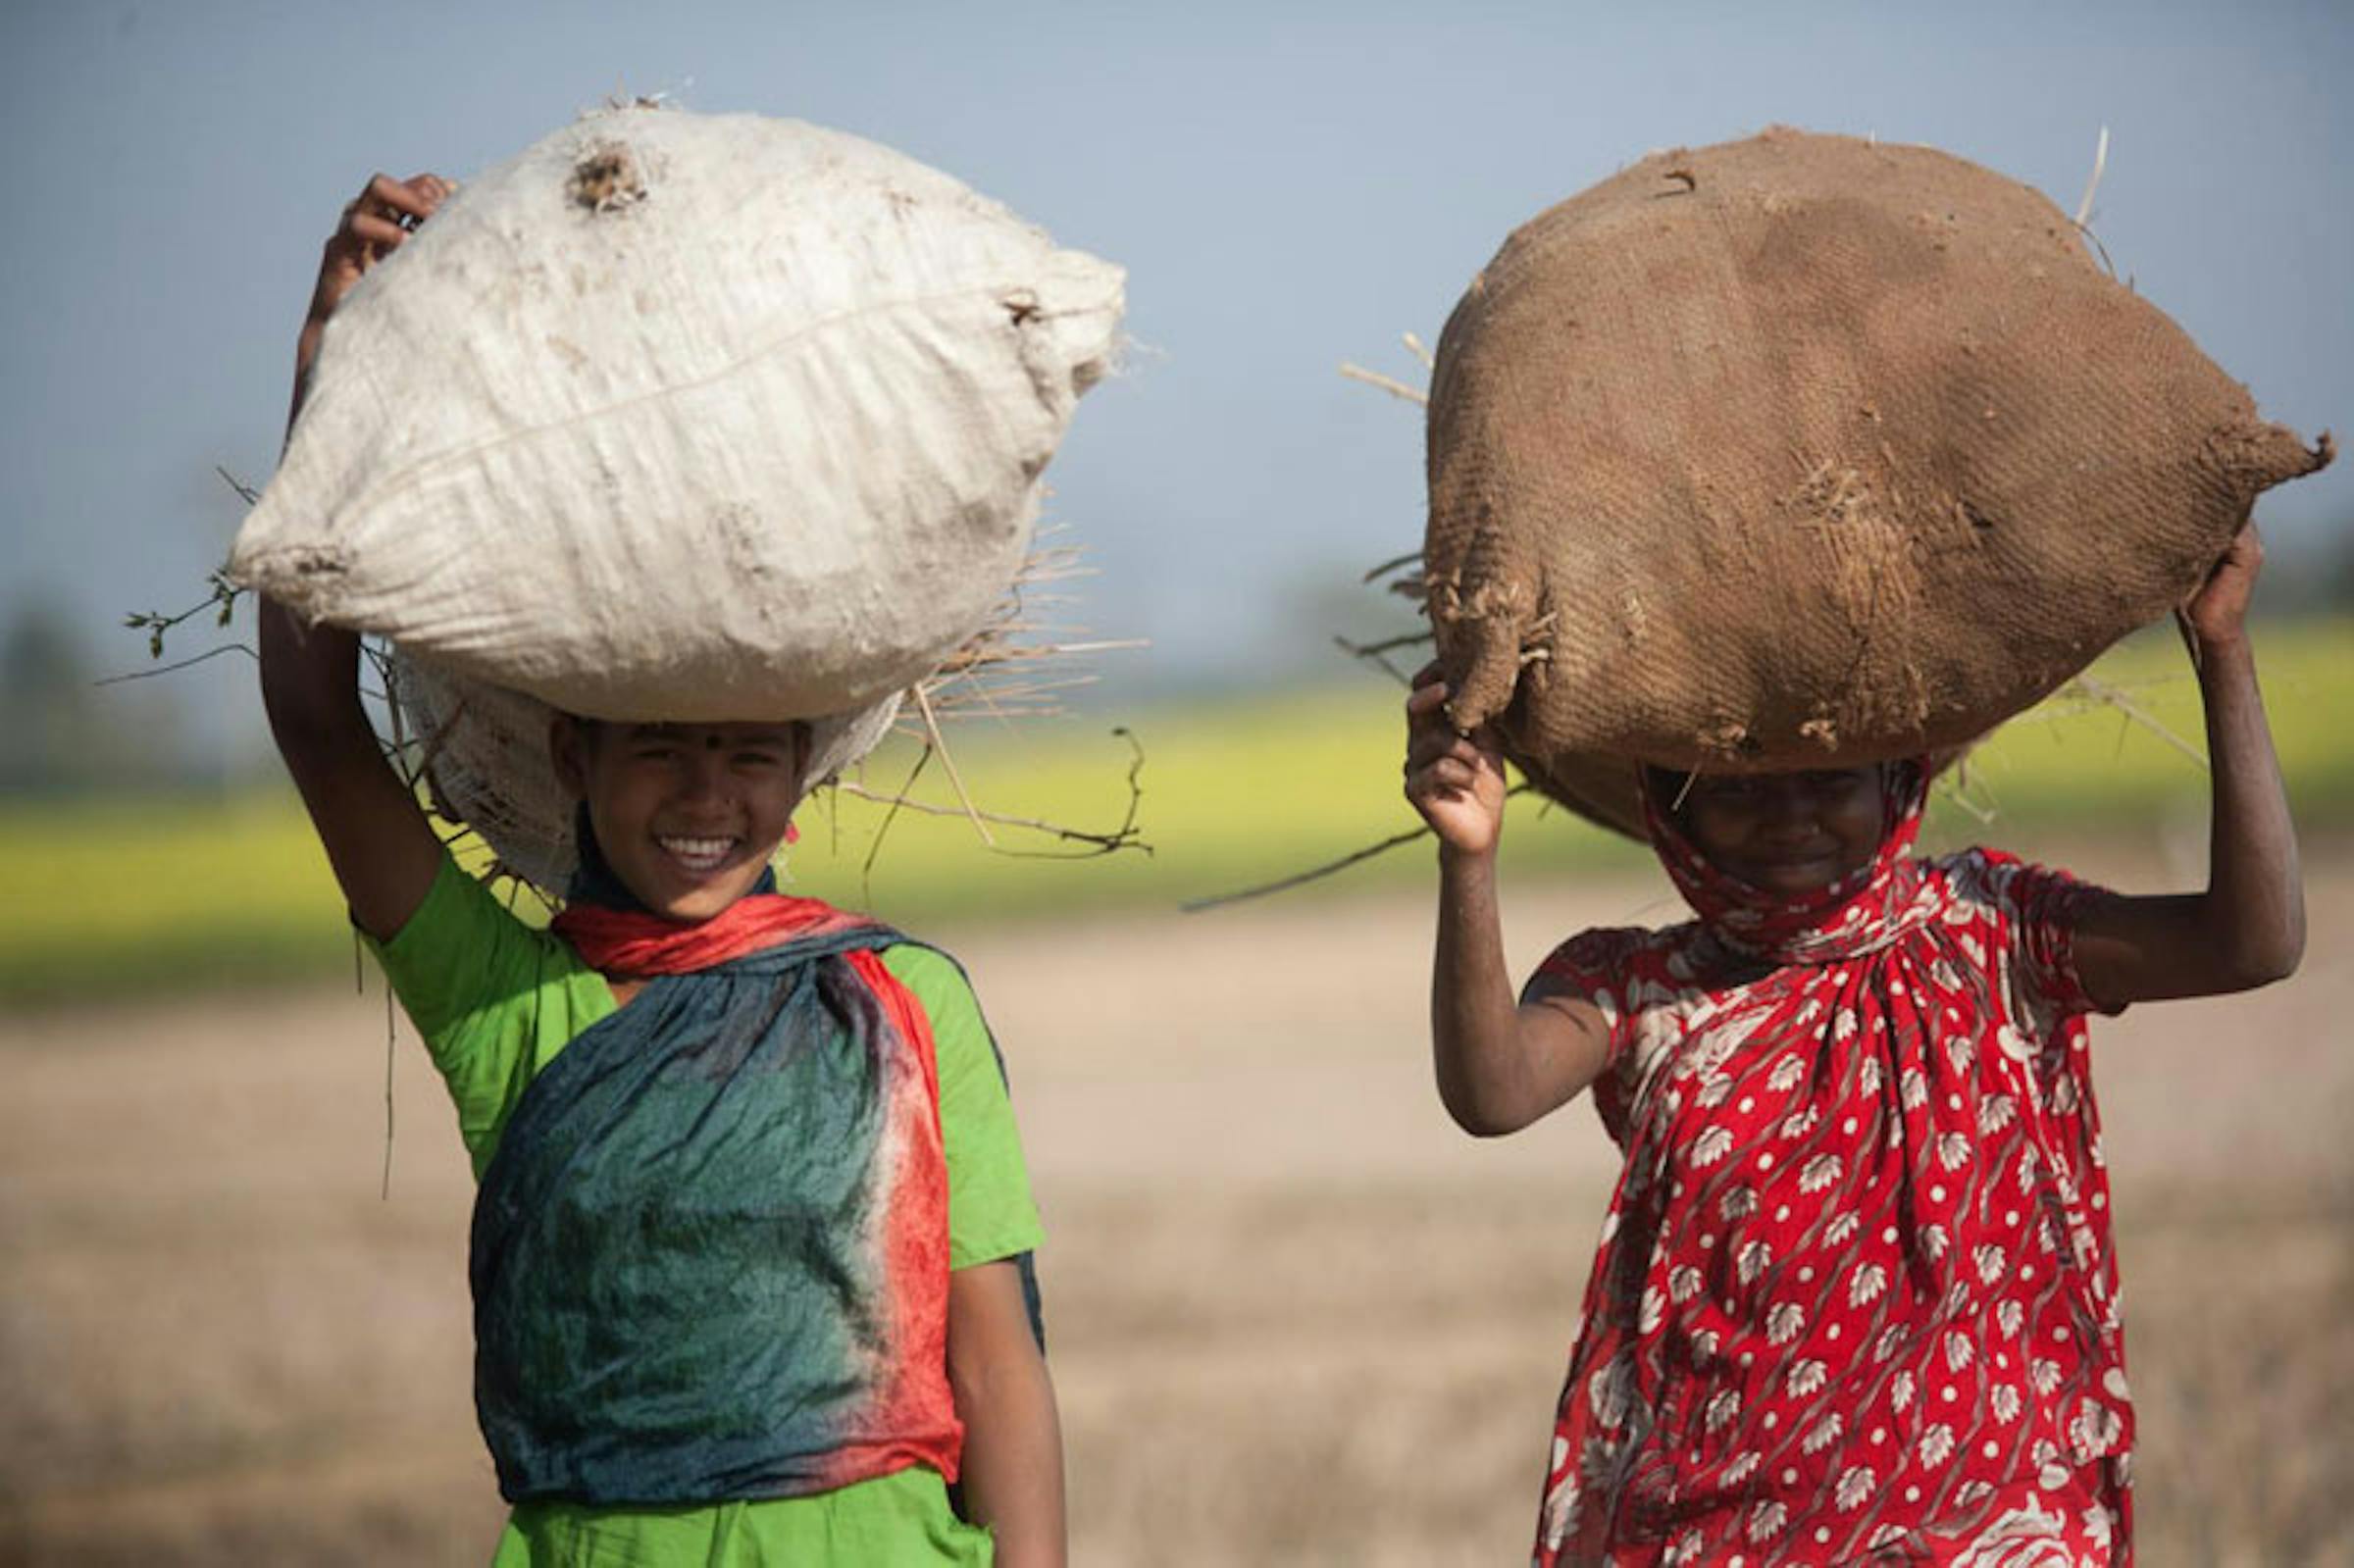 Bambini al lavoro nei campi di Rahangur (Bangladesh). L'agricoltura è il settore preponderante per i 115 milioni di minori impiegati nelle forme peggiori di sfruttamento del lavoro minorile - ©UNICEF Bangladesh/2013-0355/Habibul Haque